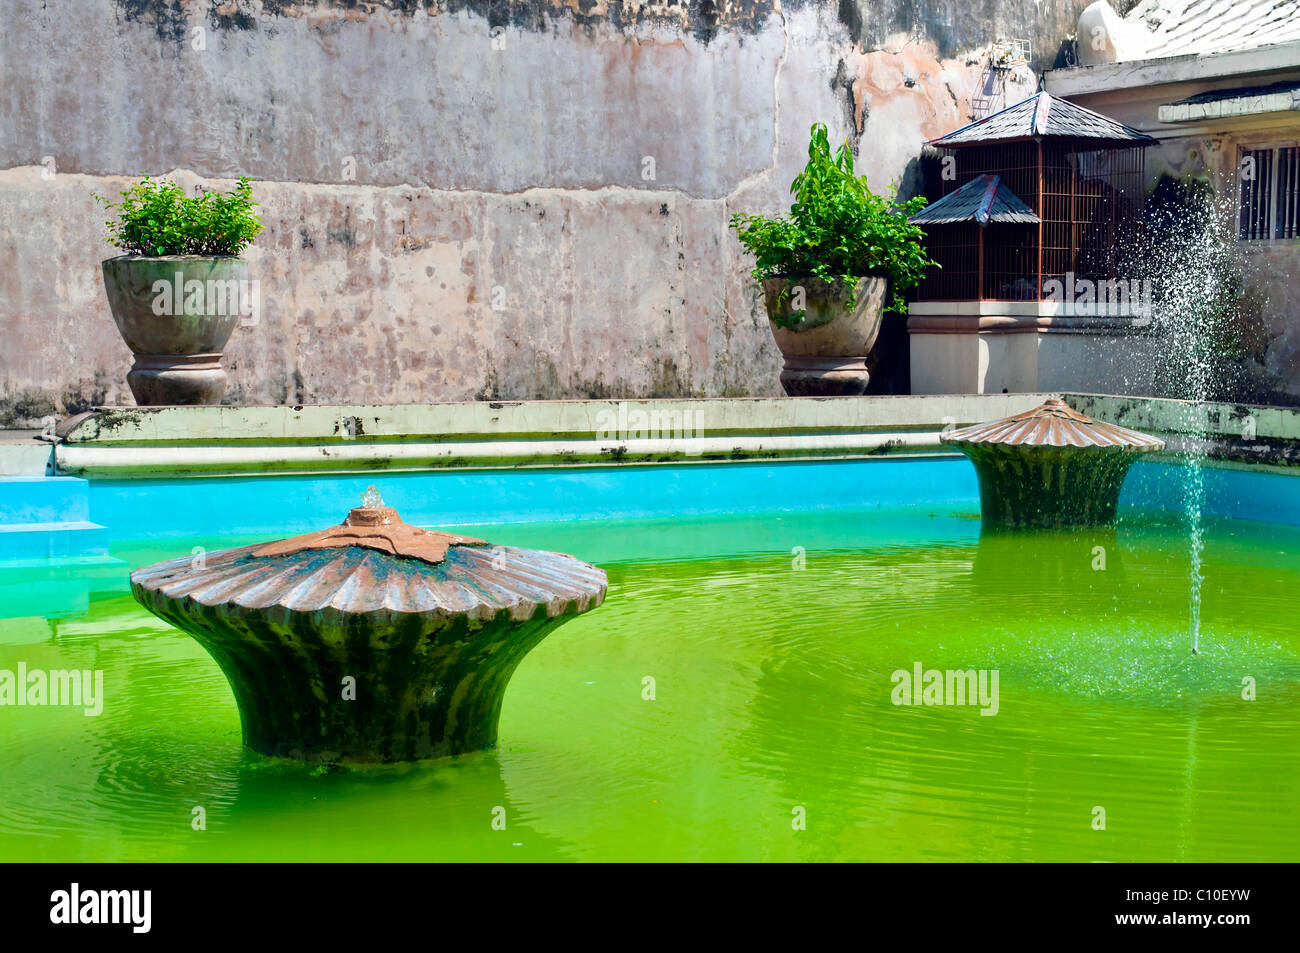 Green pool with fountain in Taman Sari water castle, Indonesia, Yogyakarta Stock Photo